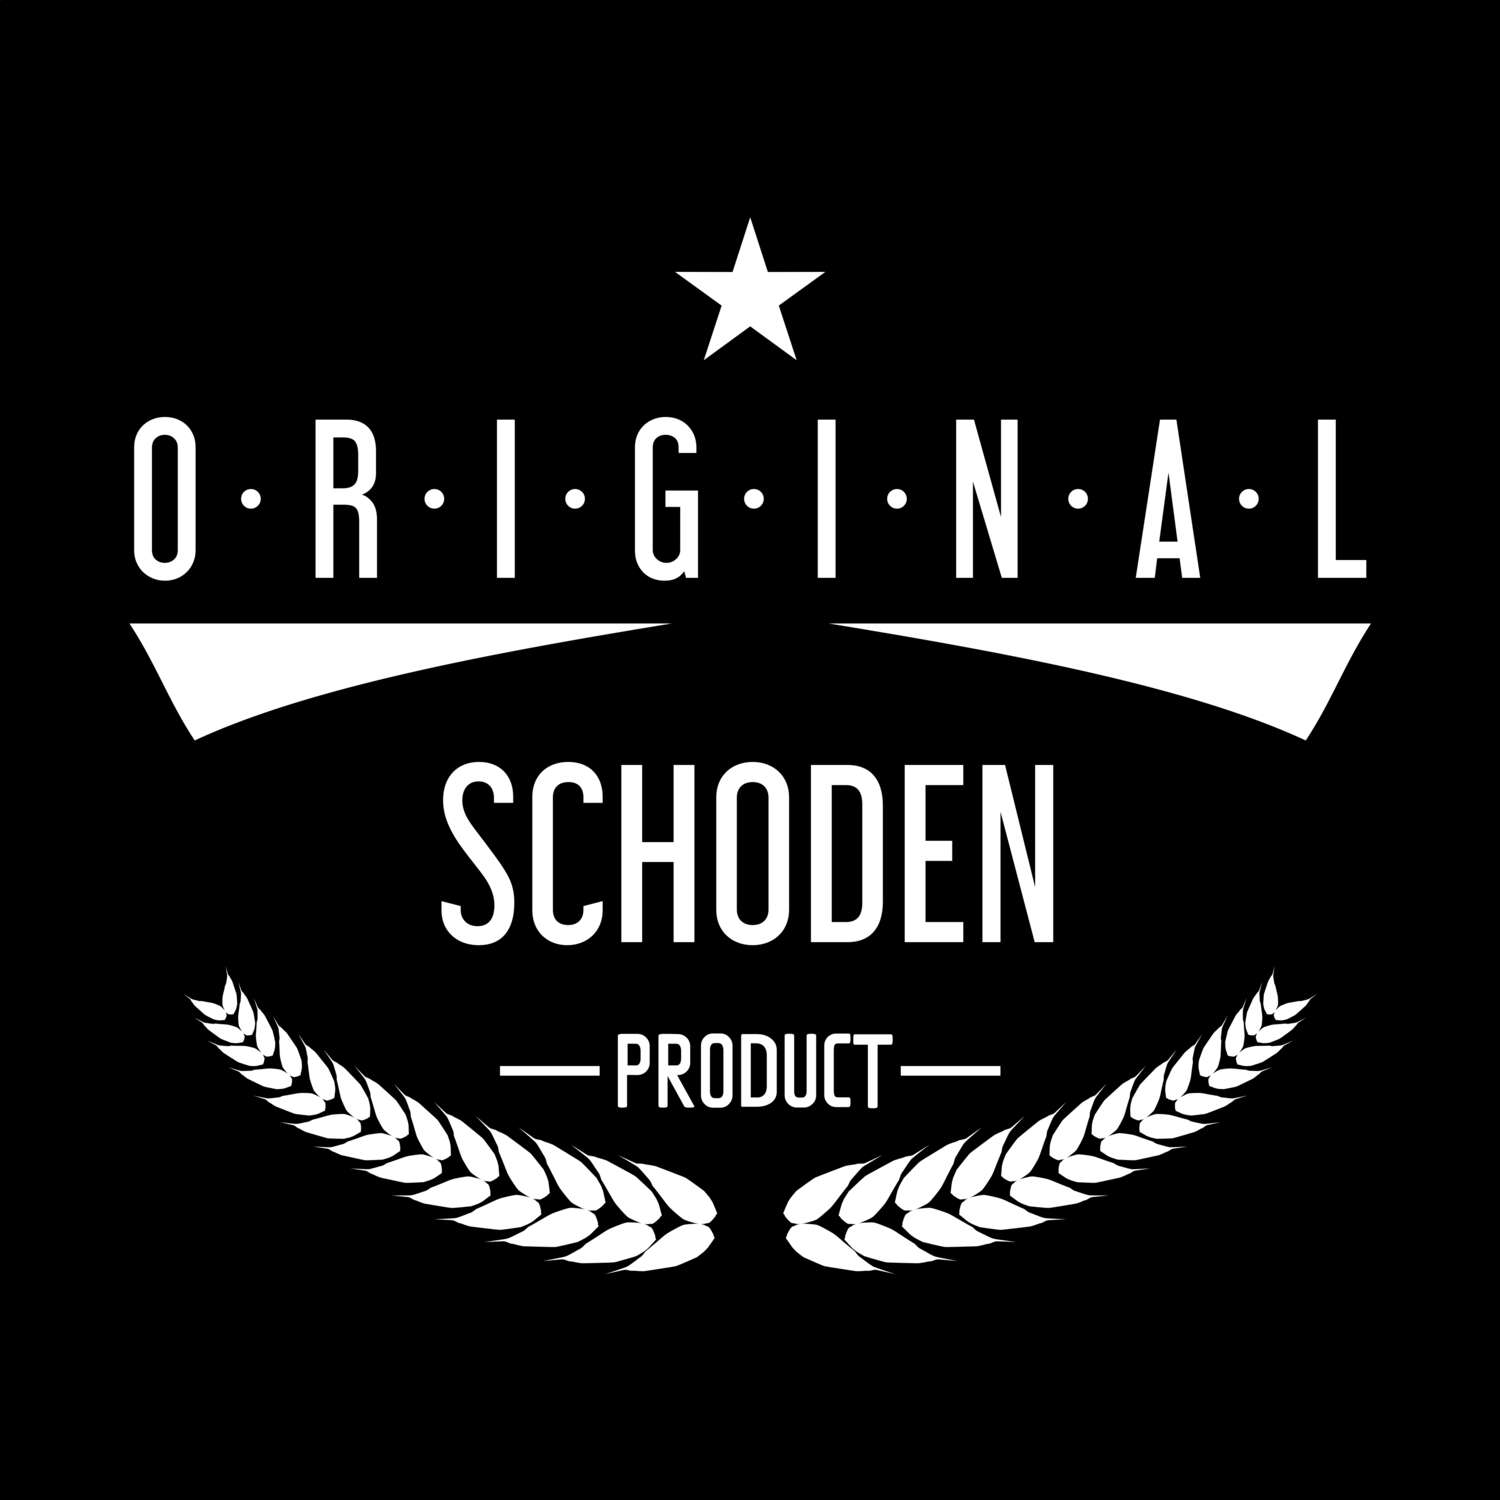 Schoden T-Shirt »Original Product«